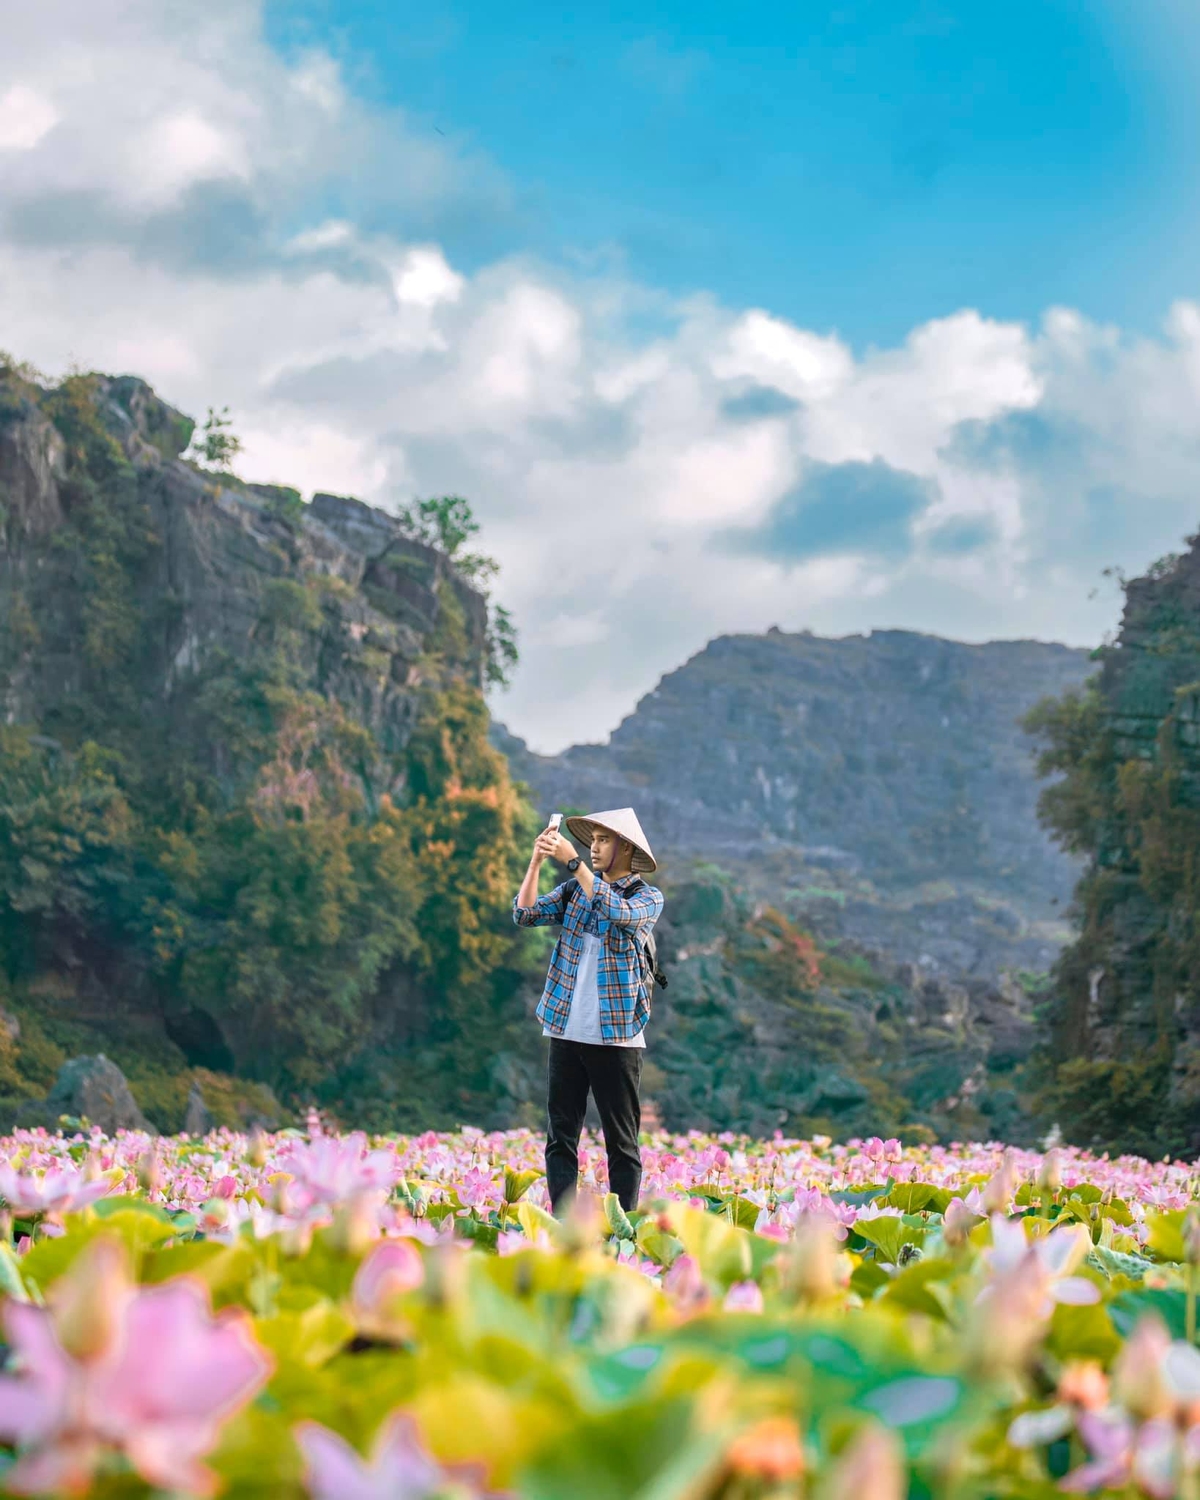 Bùi Ngọc Công, blogger du lịch người Quảng Nam, thường được gia đình và bạn bè gọi là Rọt nên trang của anh có tên 